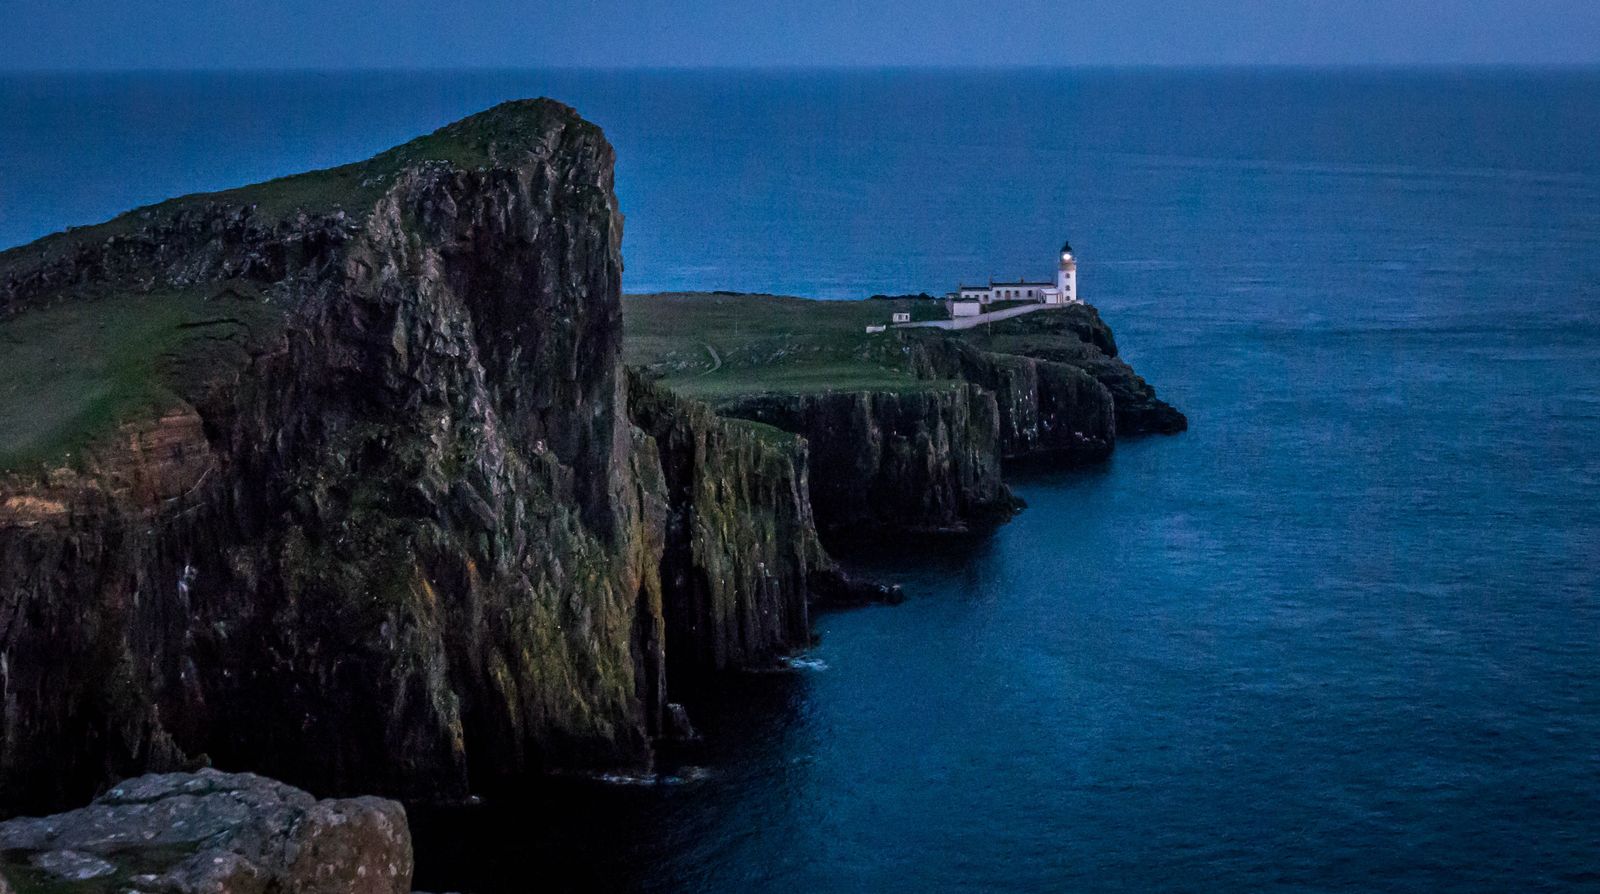 Isle of Skye Activities - Culture Trekking - #IsleofSkye #Scotland #CultureTrekking